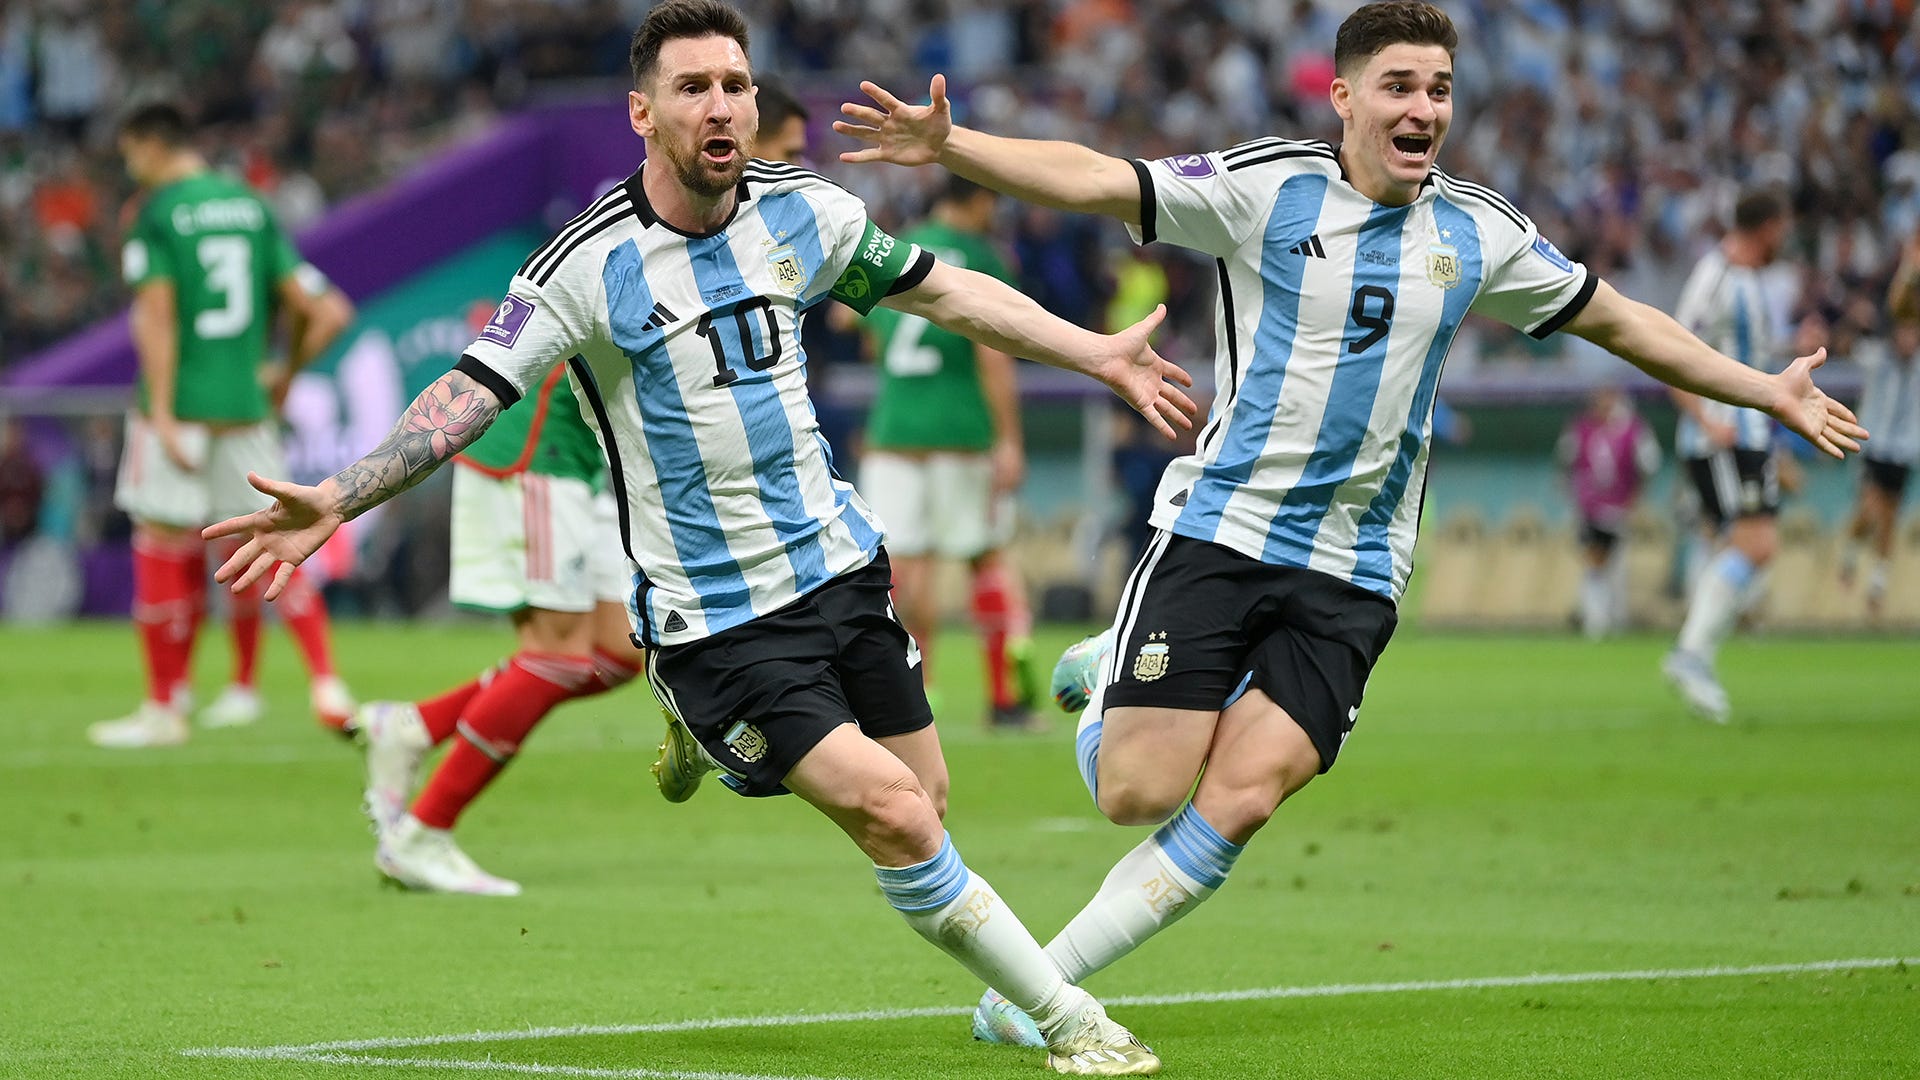 Polonia-Argentina dove vederla Rai 1, Rai 2 o Rai Sport + HD? Canale tv, diretta streaming, formazioni della partita Goal Italia